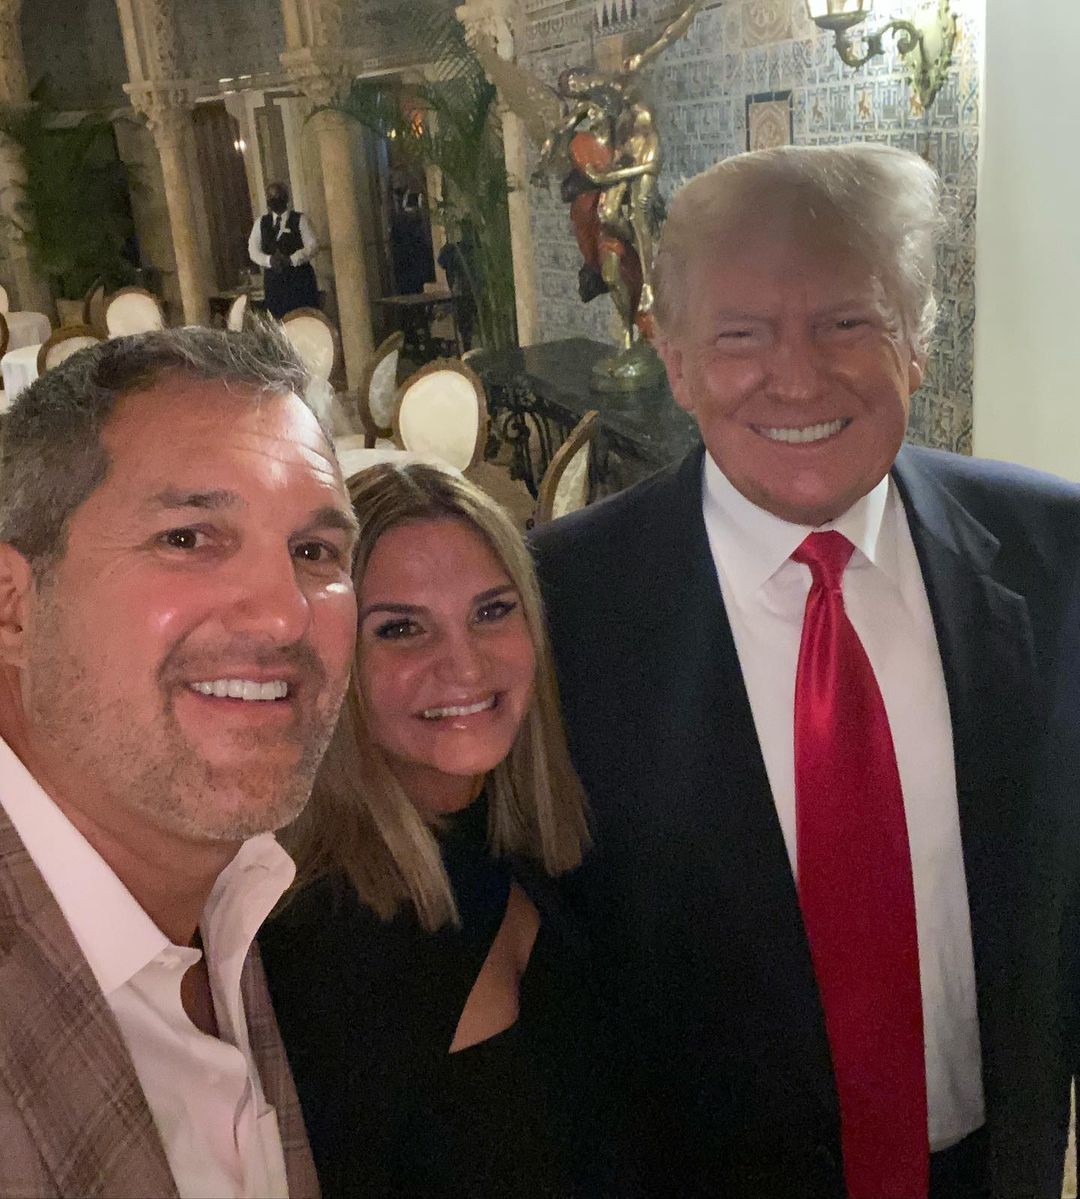 Donald e Melania Trump são tietados por fãs durante jantar em restaurante nos EUA (Foto: reproduçõa/instagram)